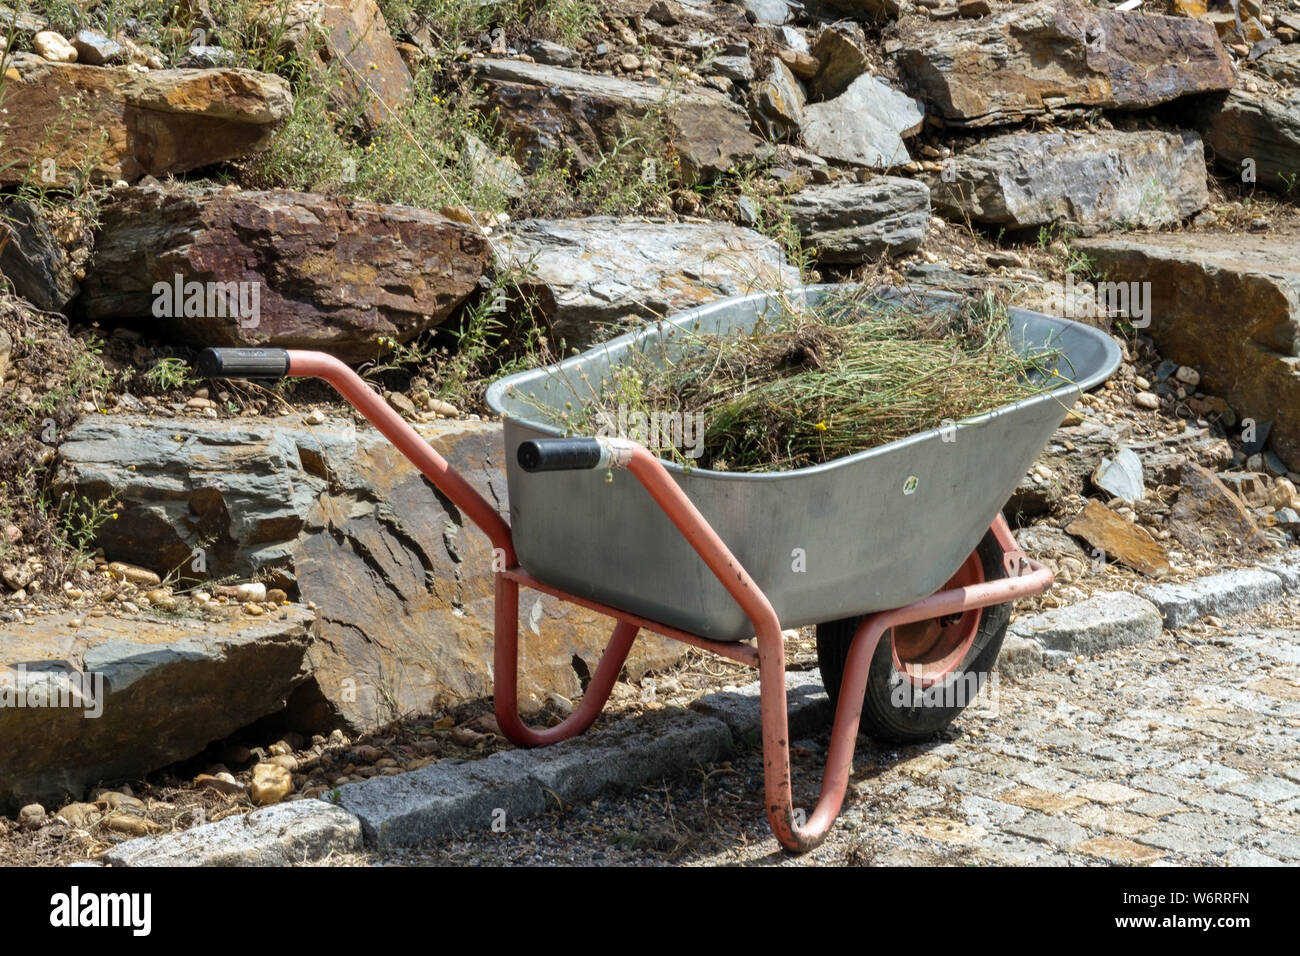 Entfernt trockene Pflanzen und Unkraut von ornamentalen Rock Garden in einer Schubkarre Stockfoto